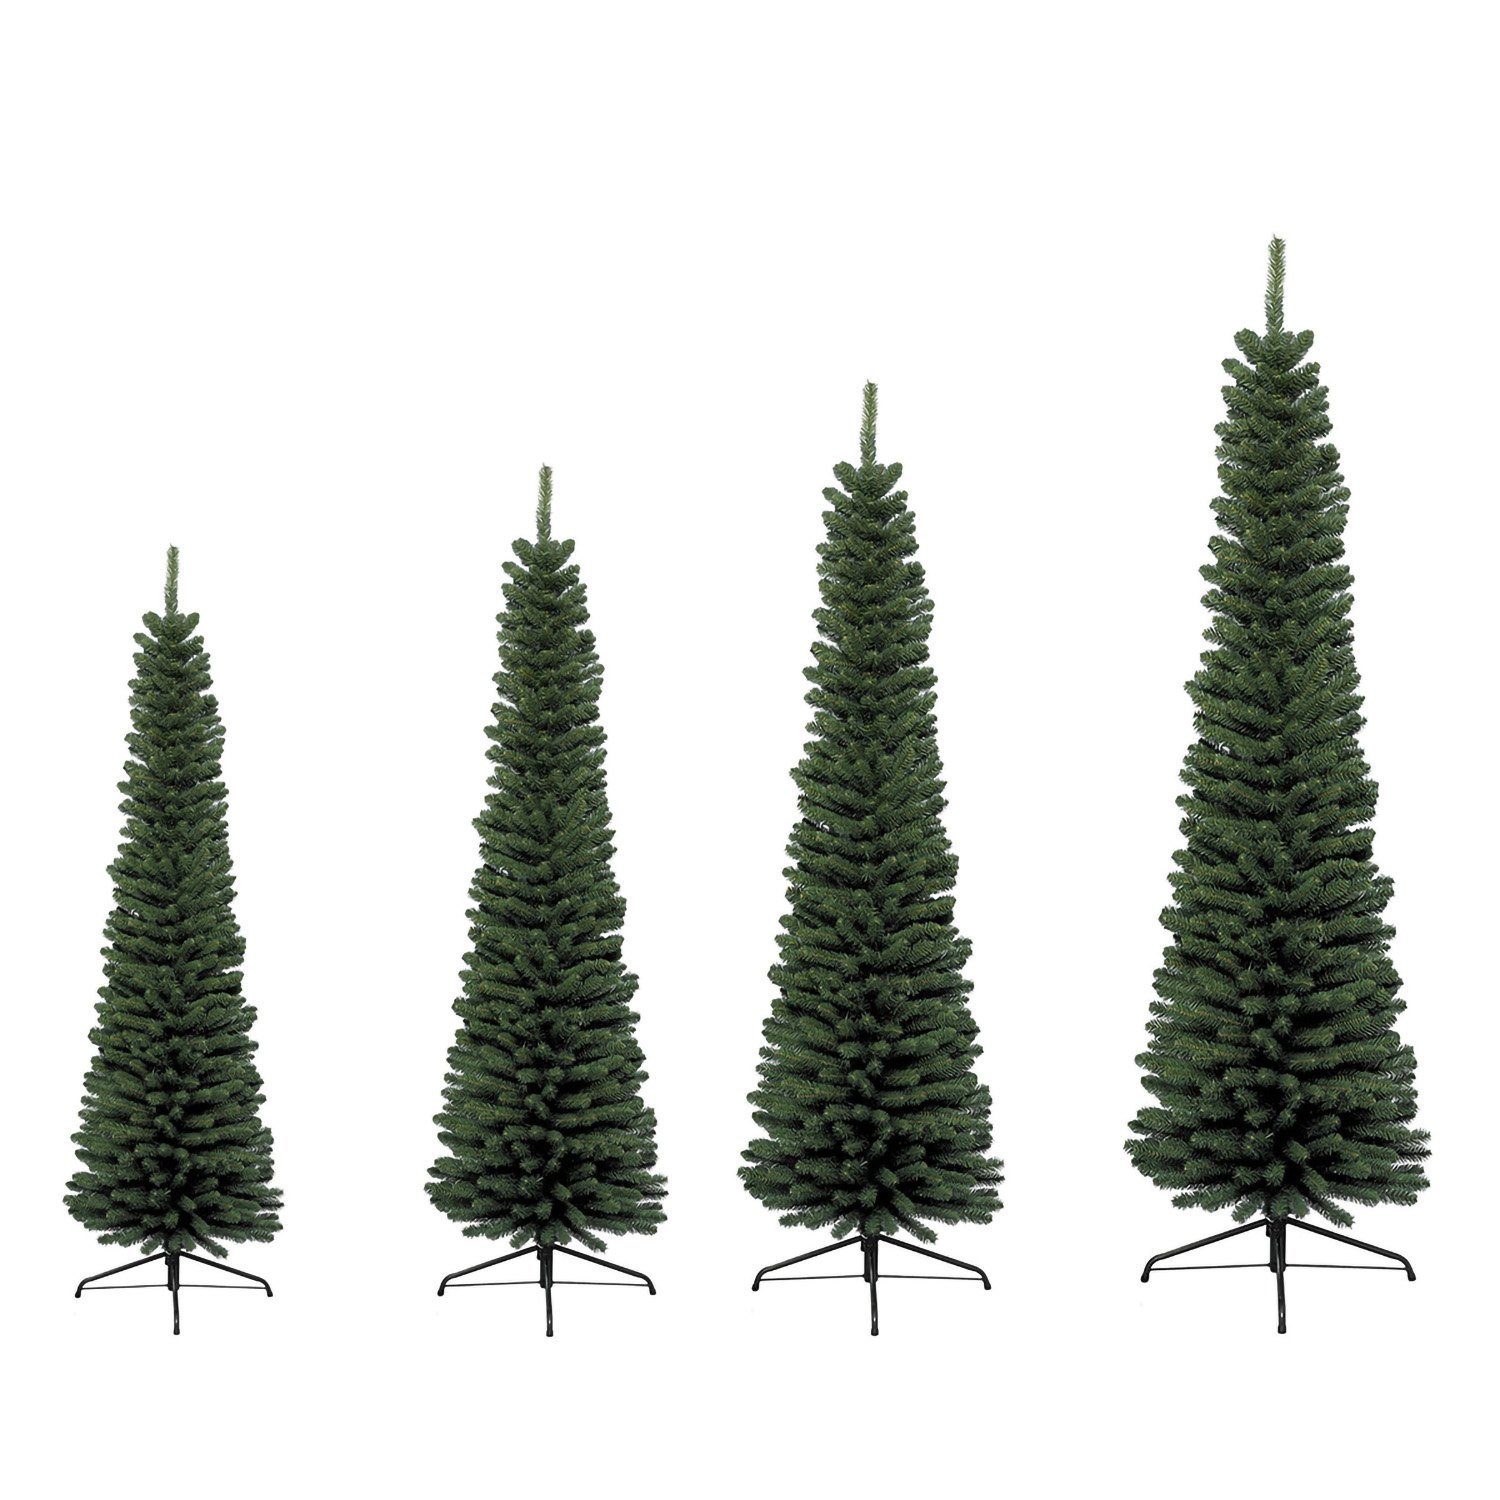 Deko grün Weihnachtsbaum - GILDE GILDE 60cm Indoor Künstlicher H. D. Tannenbaum x - 210cm